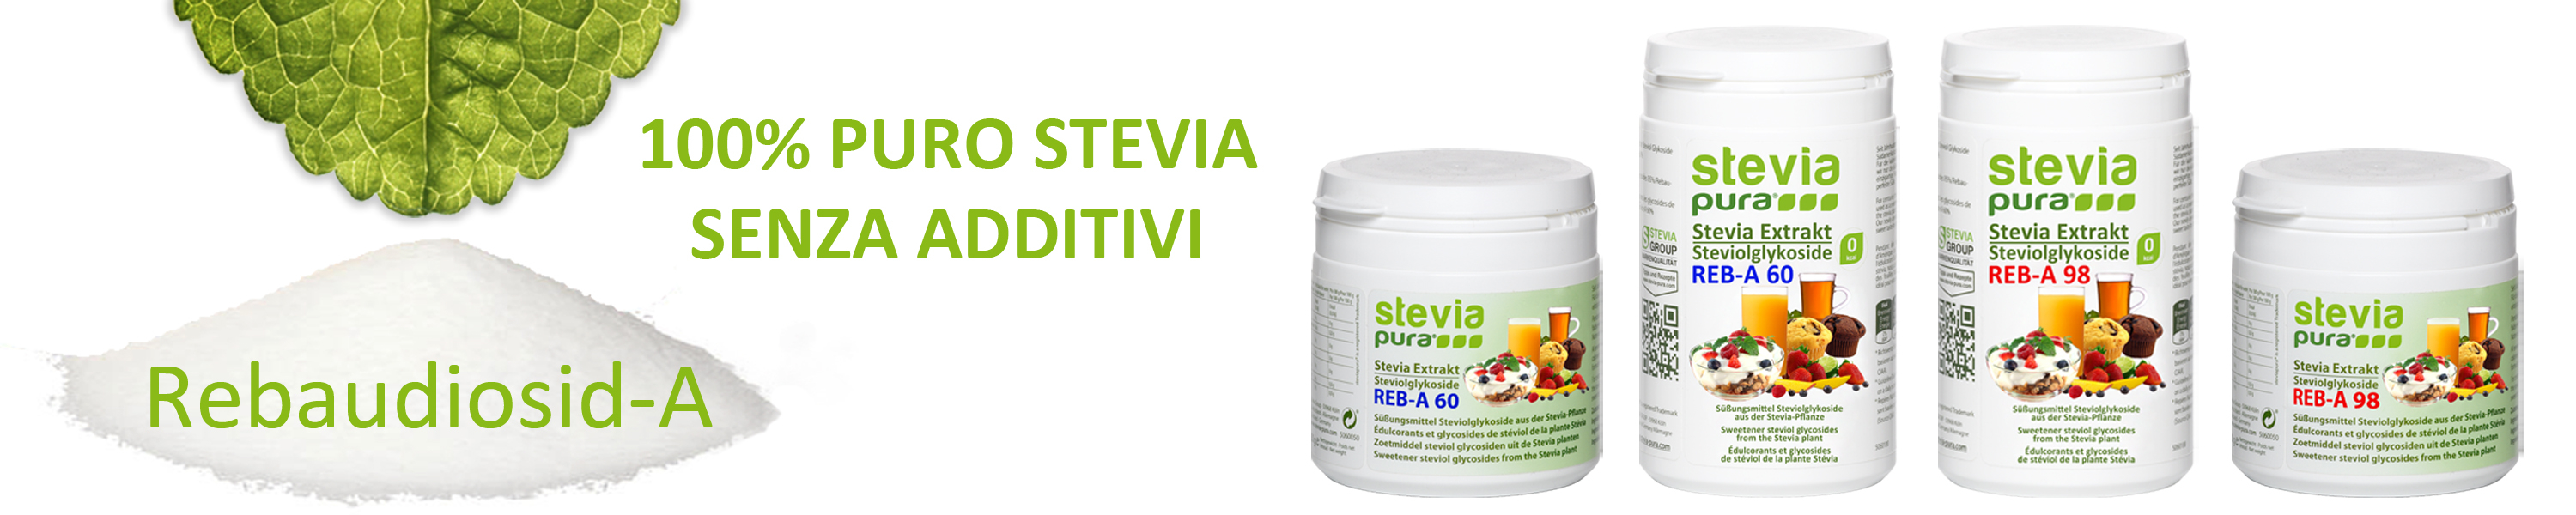 Comprare Stevia Pura al 100% senza additivi rebaudioside...